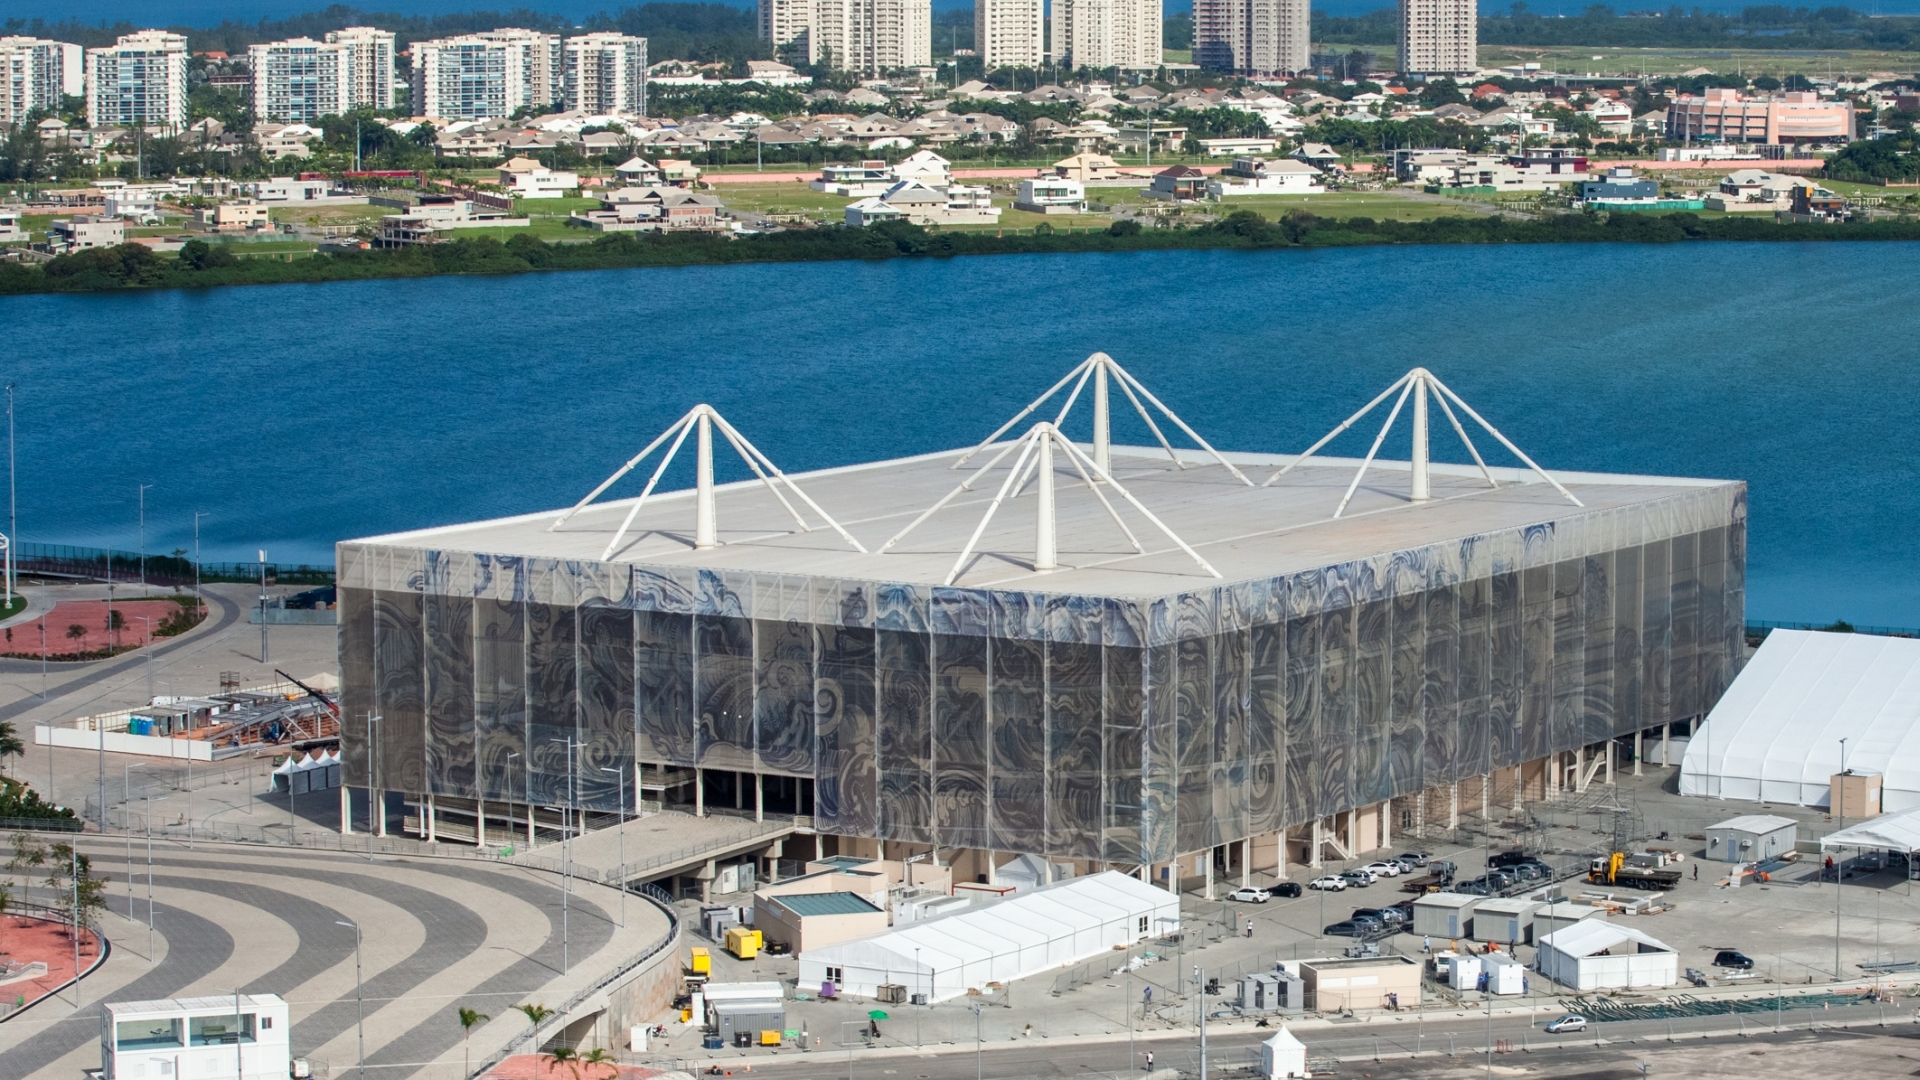 Pływalnia Olympic Aquatics Stadium. Fot. www.wikipedia.org / André Motta/Brasil2016.gov.br